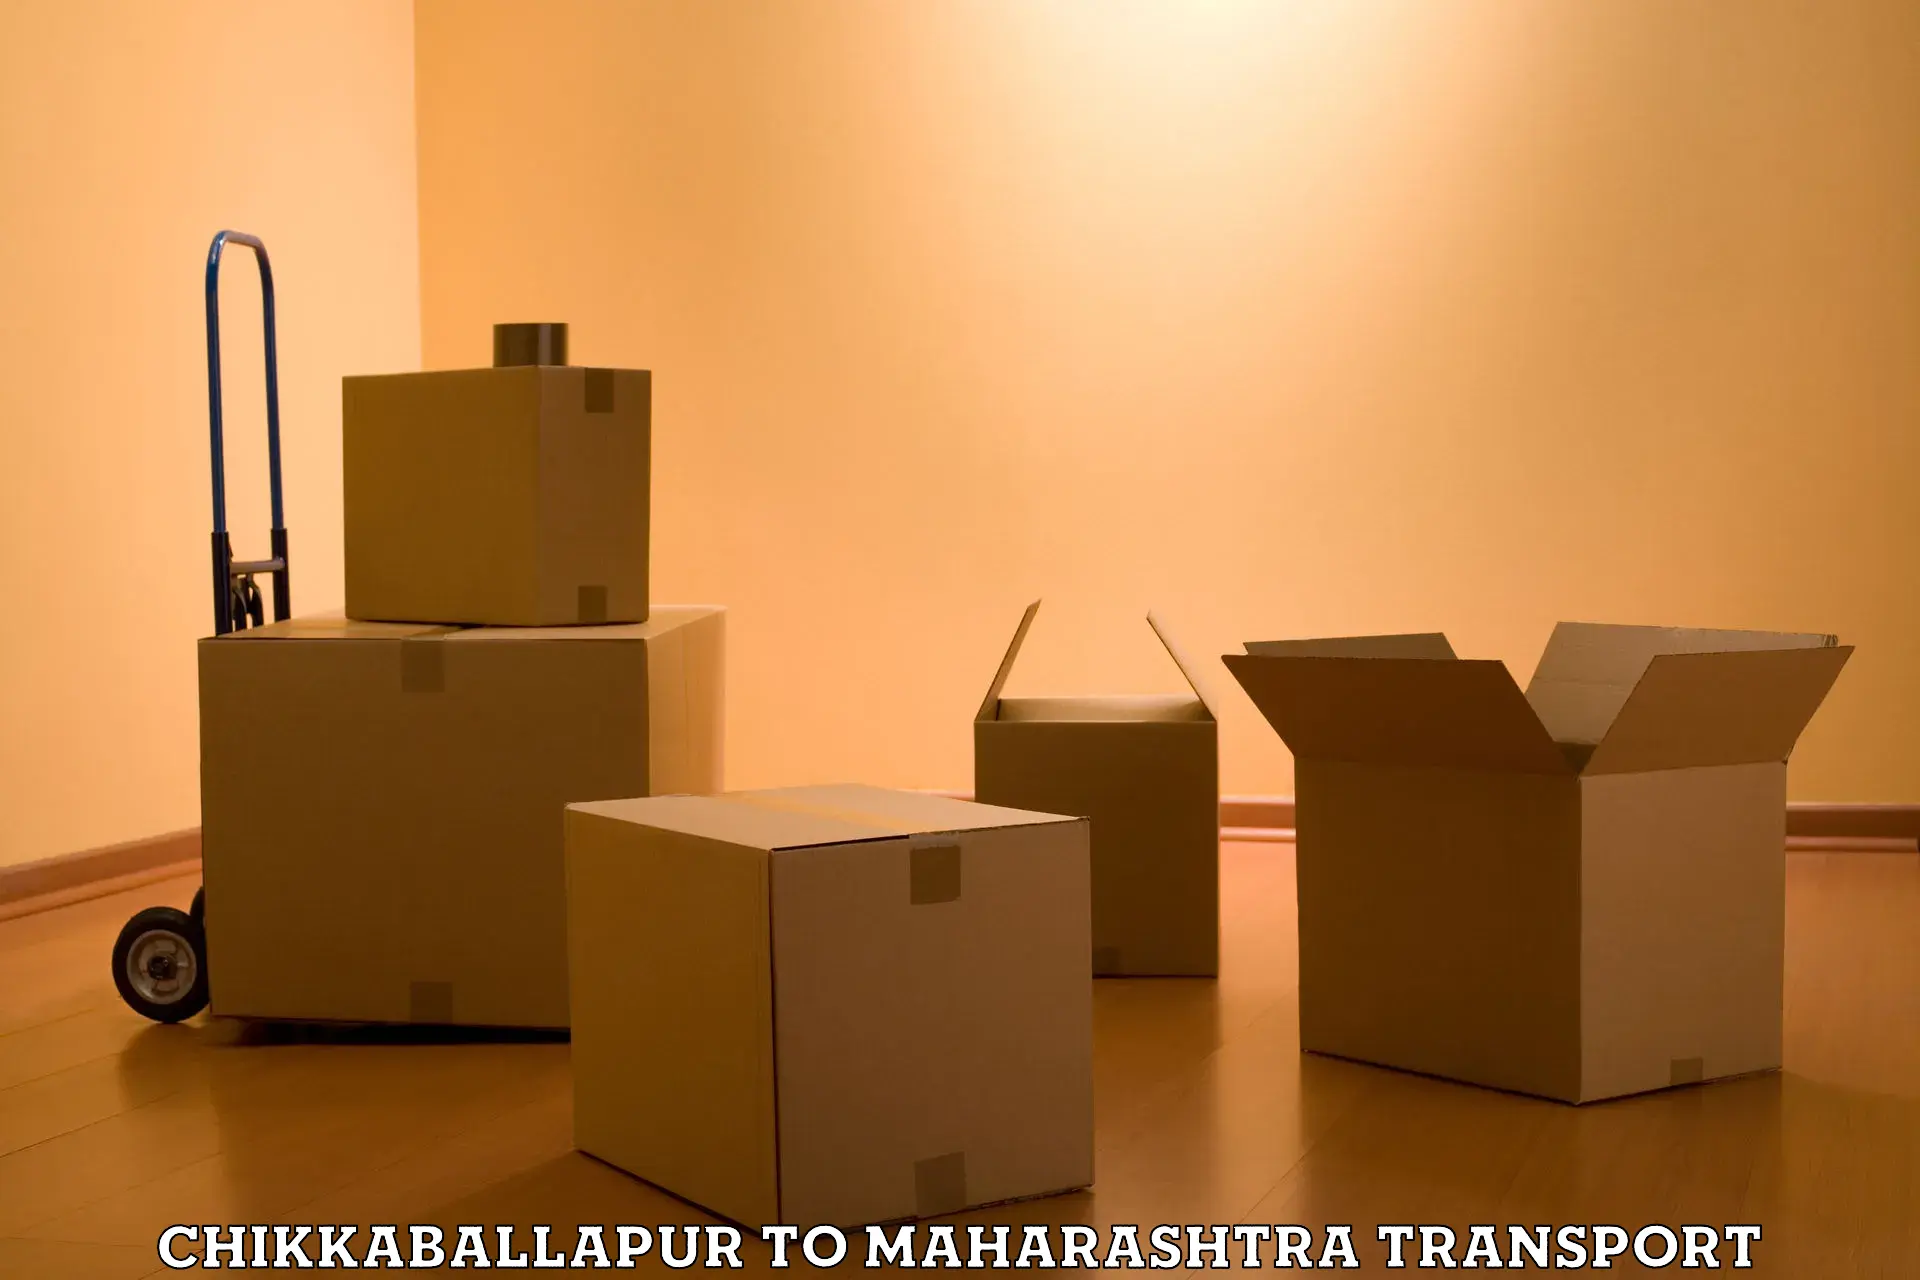 Container transport service Chikkaballapur to IIT Mumbai